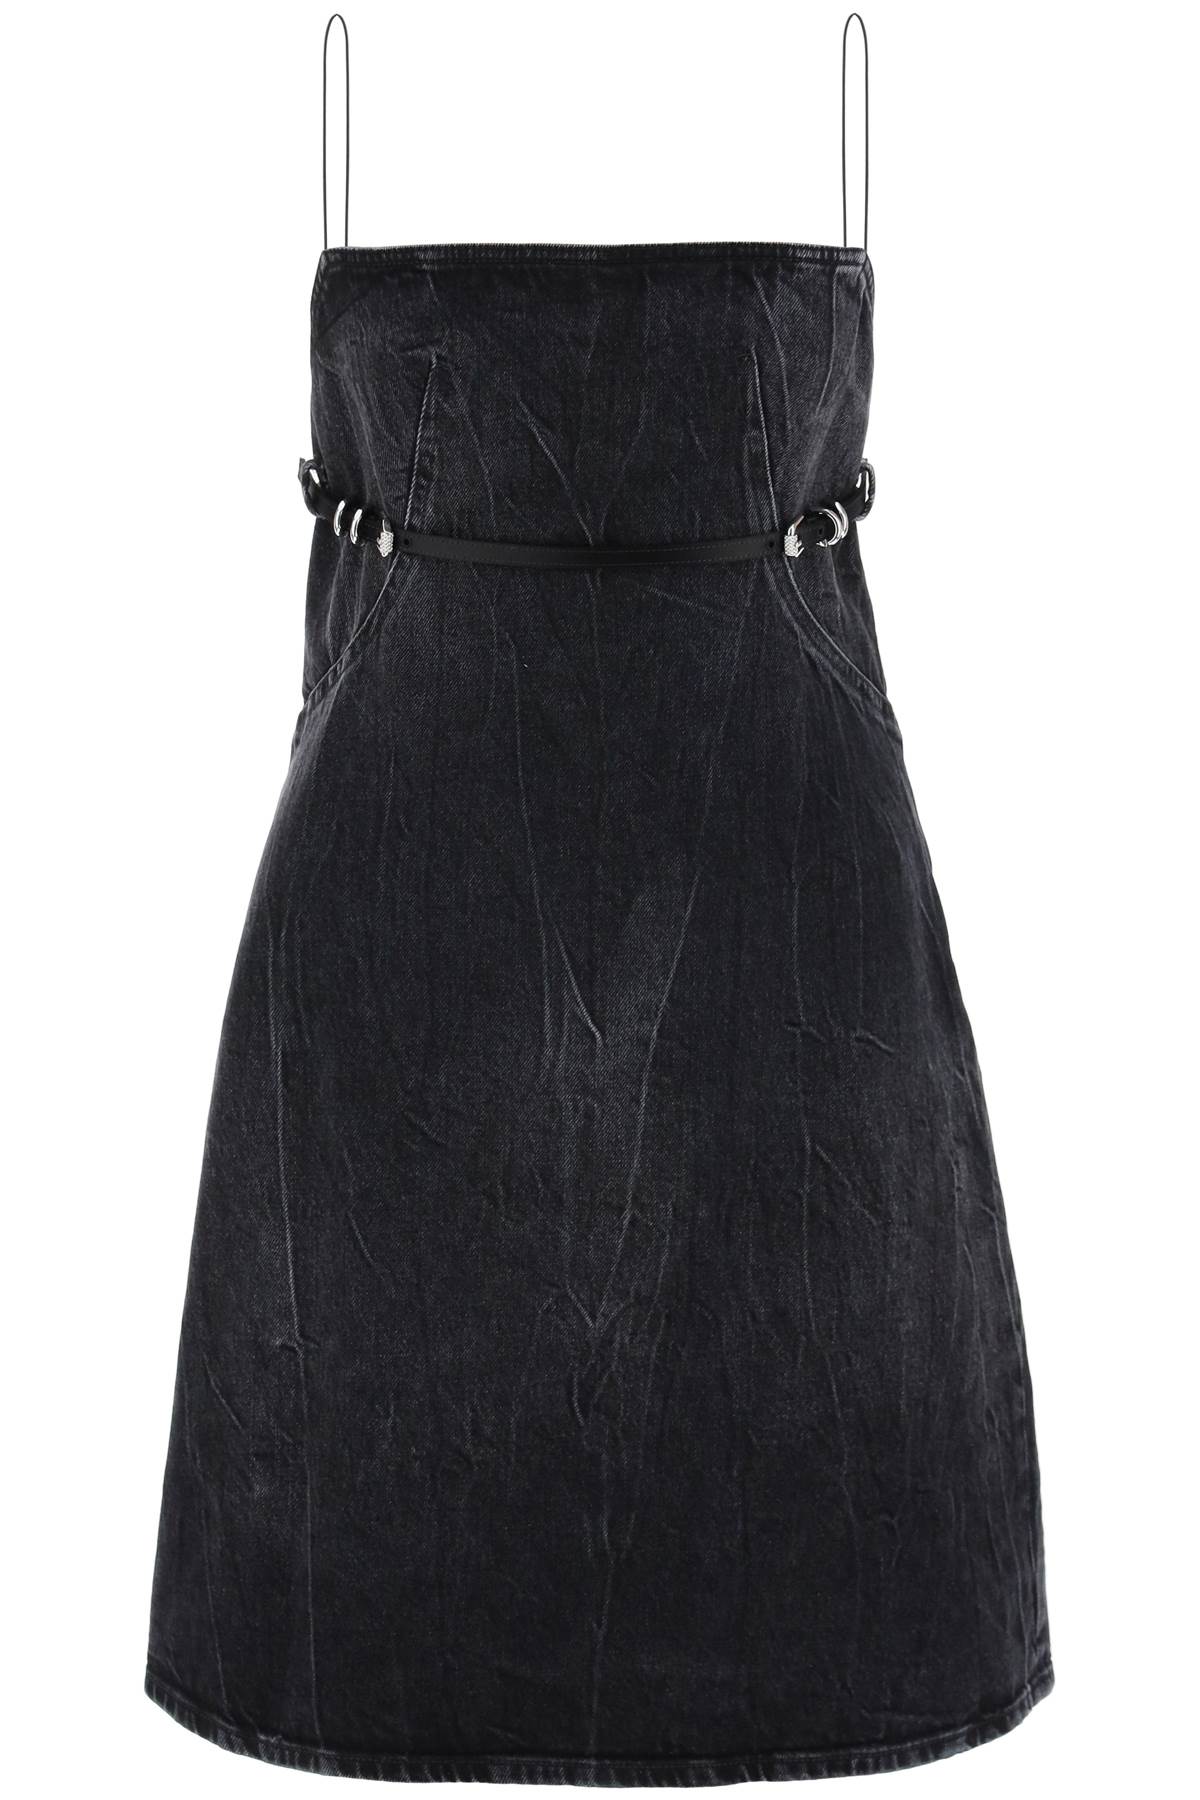 Shop Givenchy Short Denim Voyou Dress For Women In Black